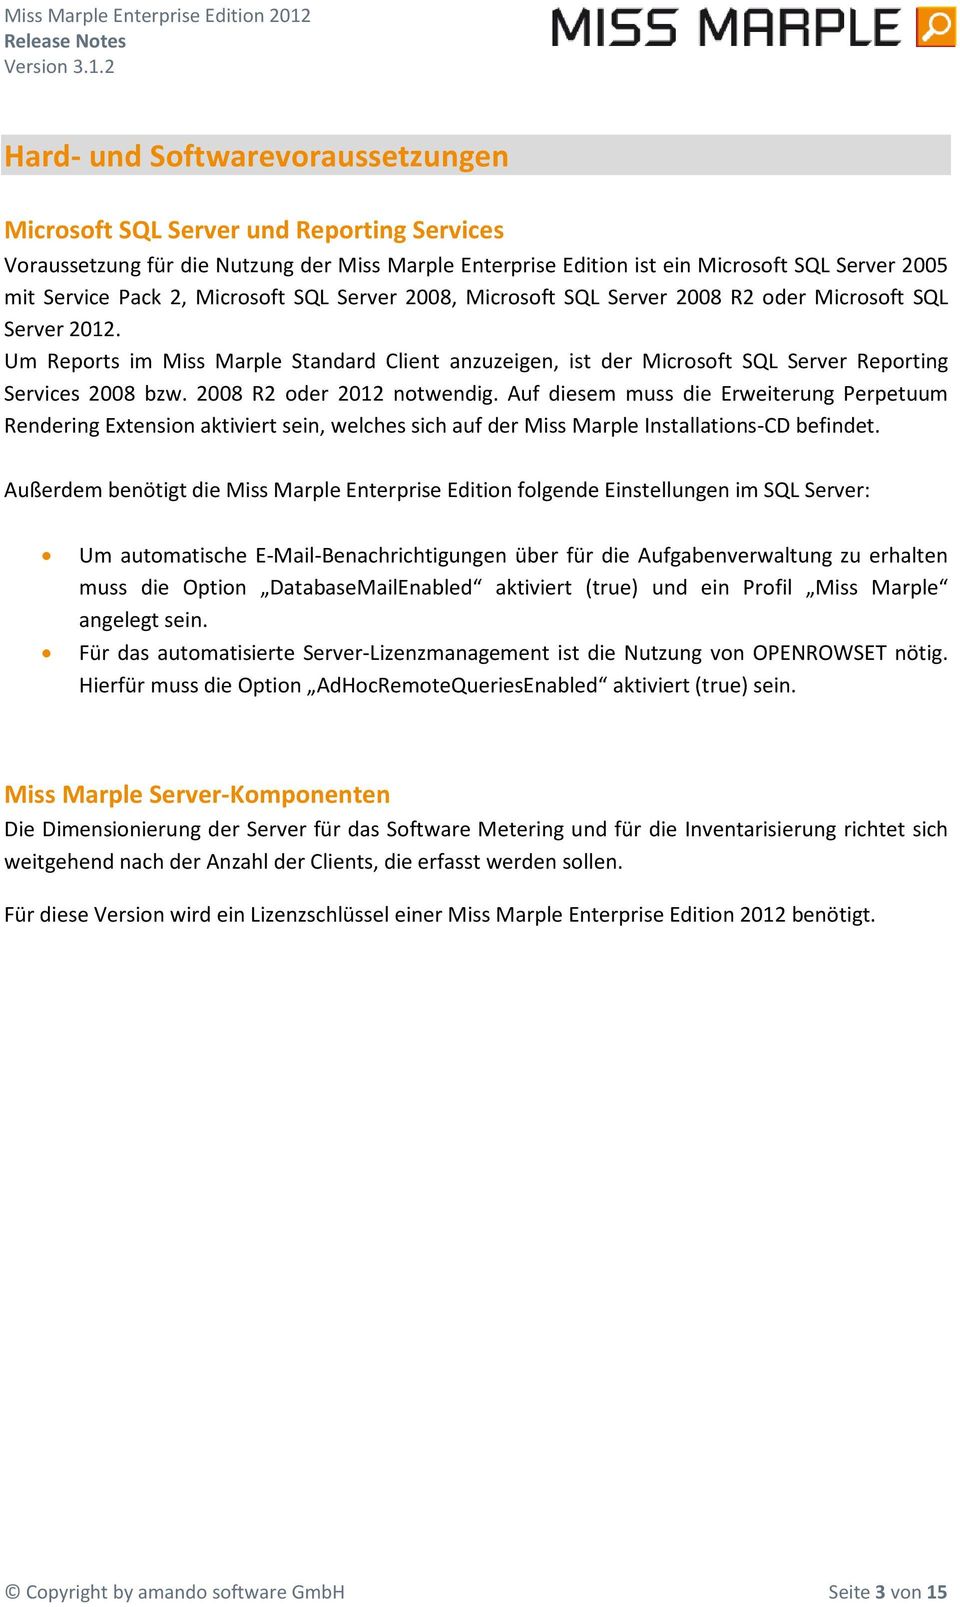 2 Hard- und Sftwarevraussetzungen Micrsft SQL Server und Reprting Services Vraussetzung für die Nutzung der Miss Marple Enterprise Editin ist ein Micrsft SQL Server 2005 mit Service Pack 2, Micrsft